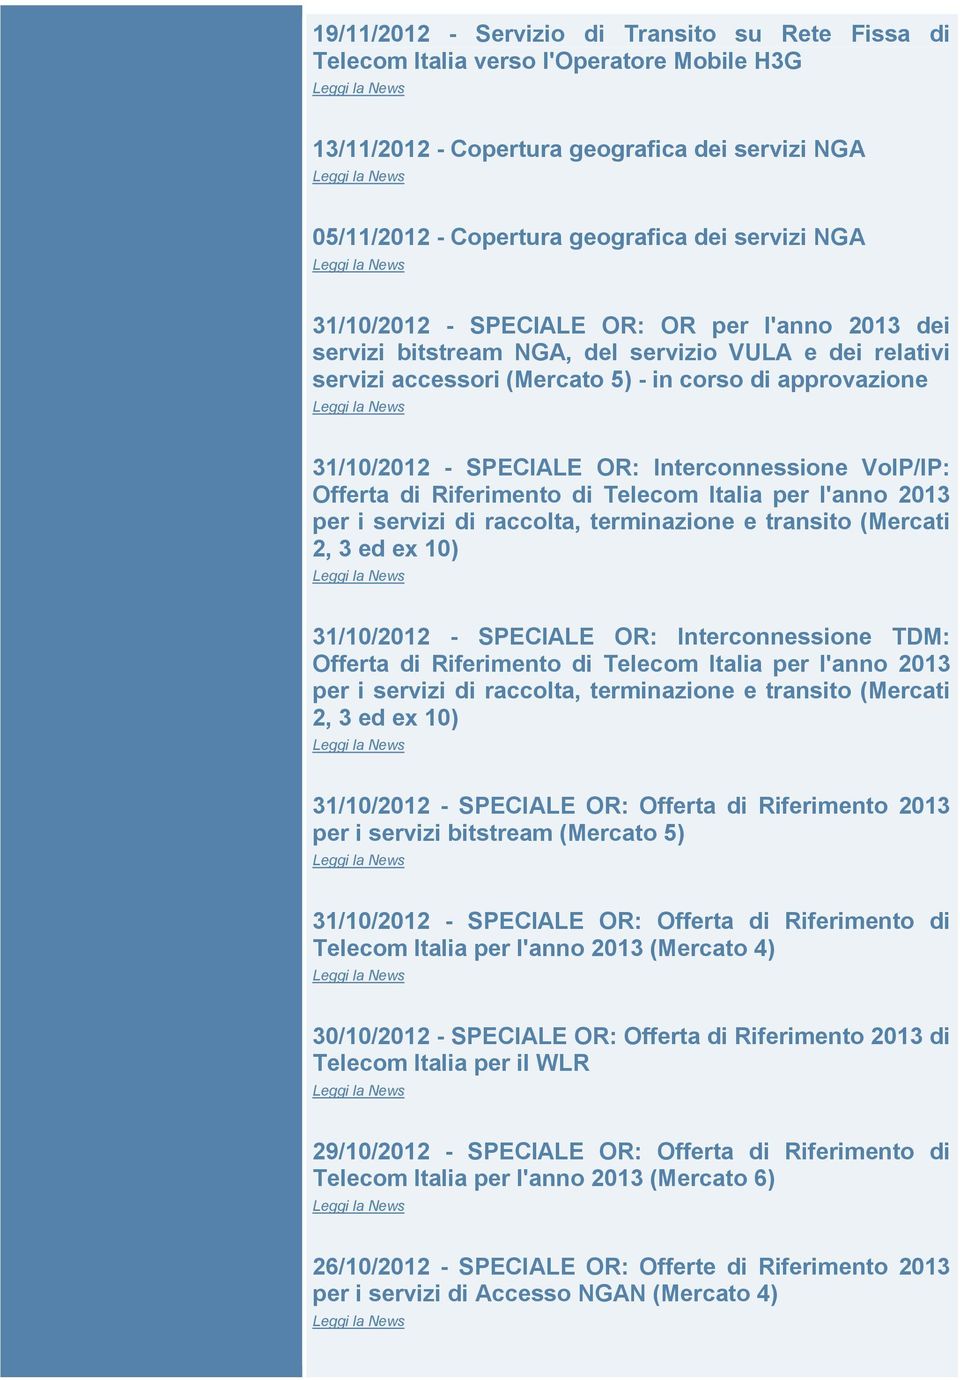 Interconnessione VoIP/IP: Offerta di Riferimento di Telecom Italia per l'anno 2013 per i servizi di raccolta, terminazione e transito (Mercati 2, 3 ed ex 10) 31/10/2012 - SPECIALE OR: